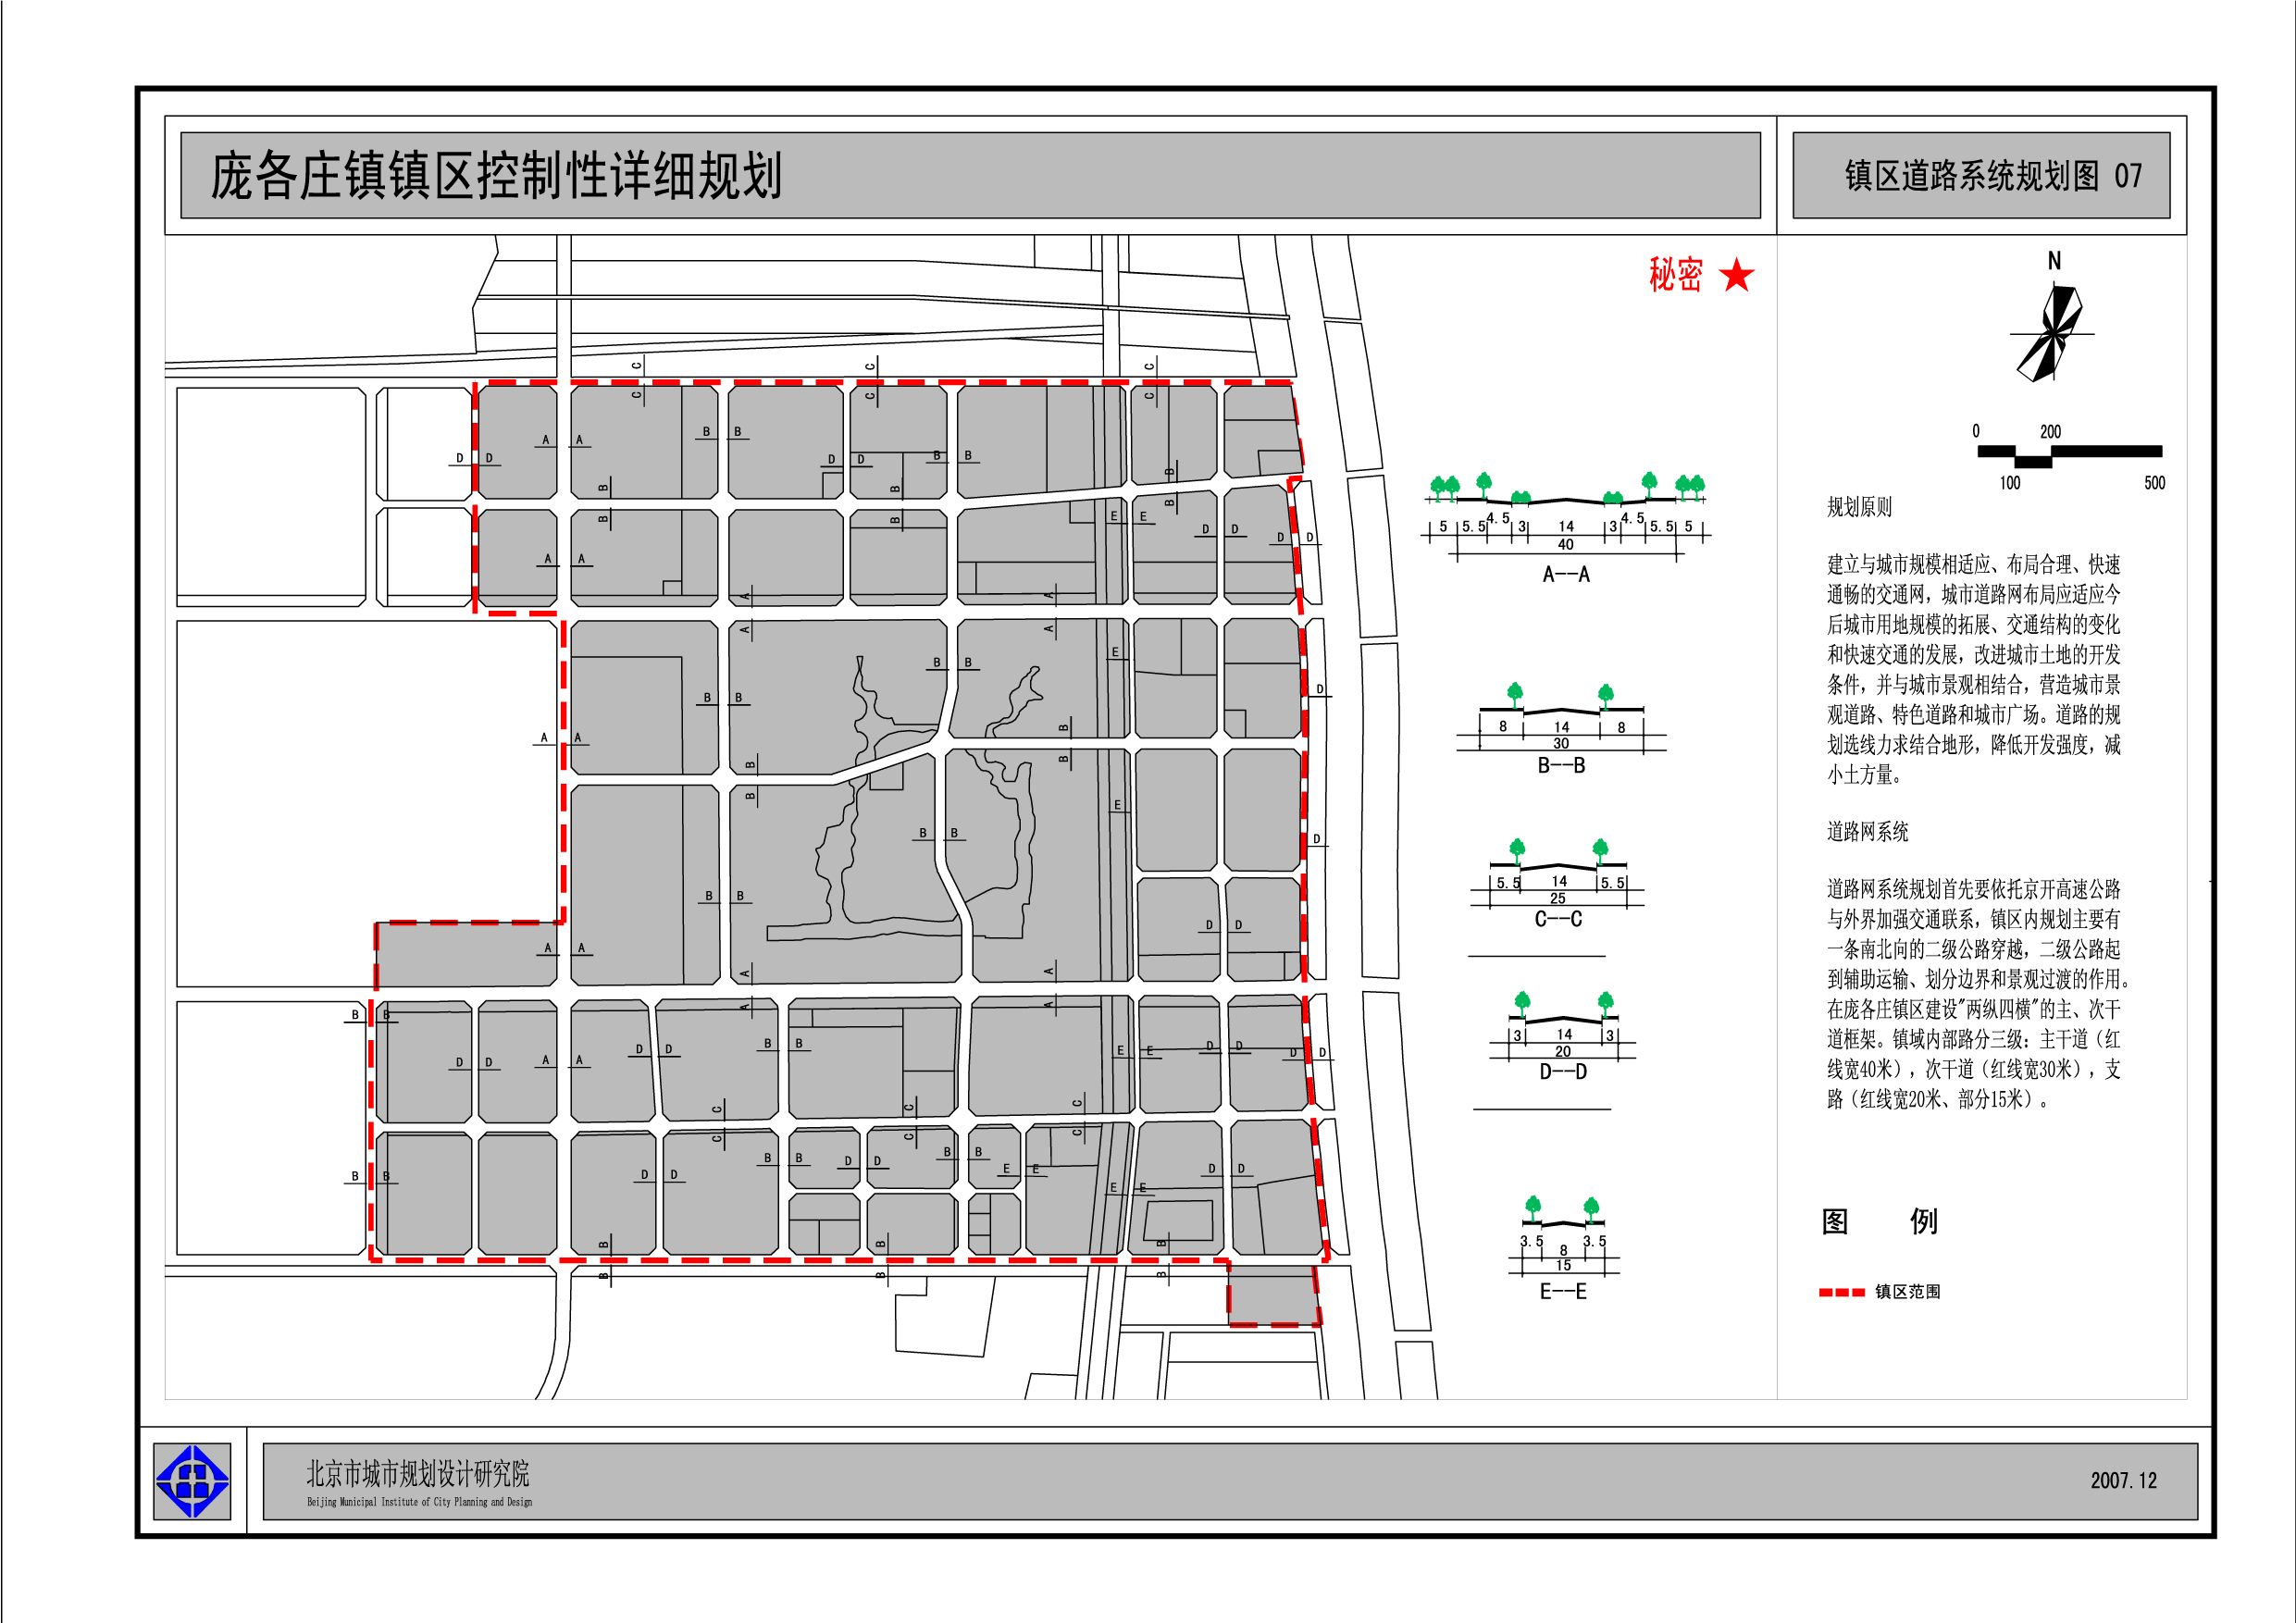 庞各庄镇镇区道路系统规划图